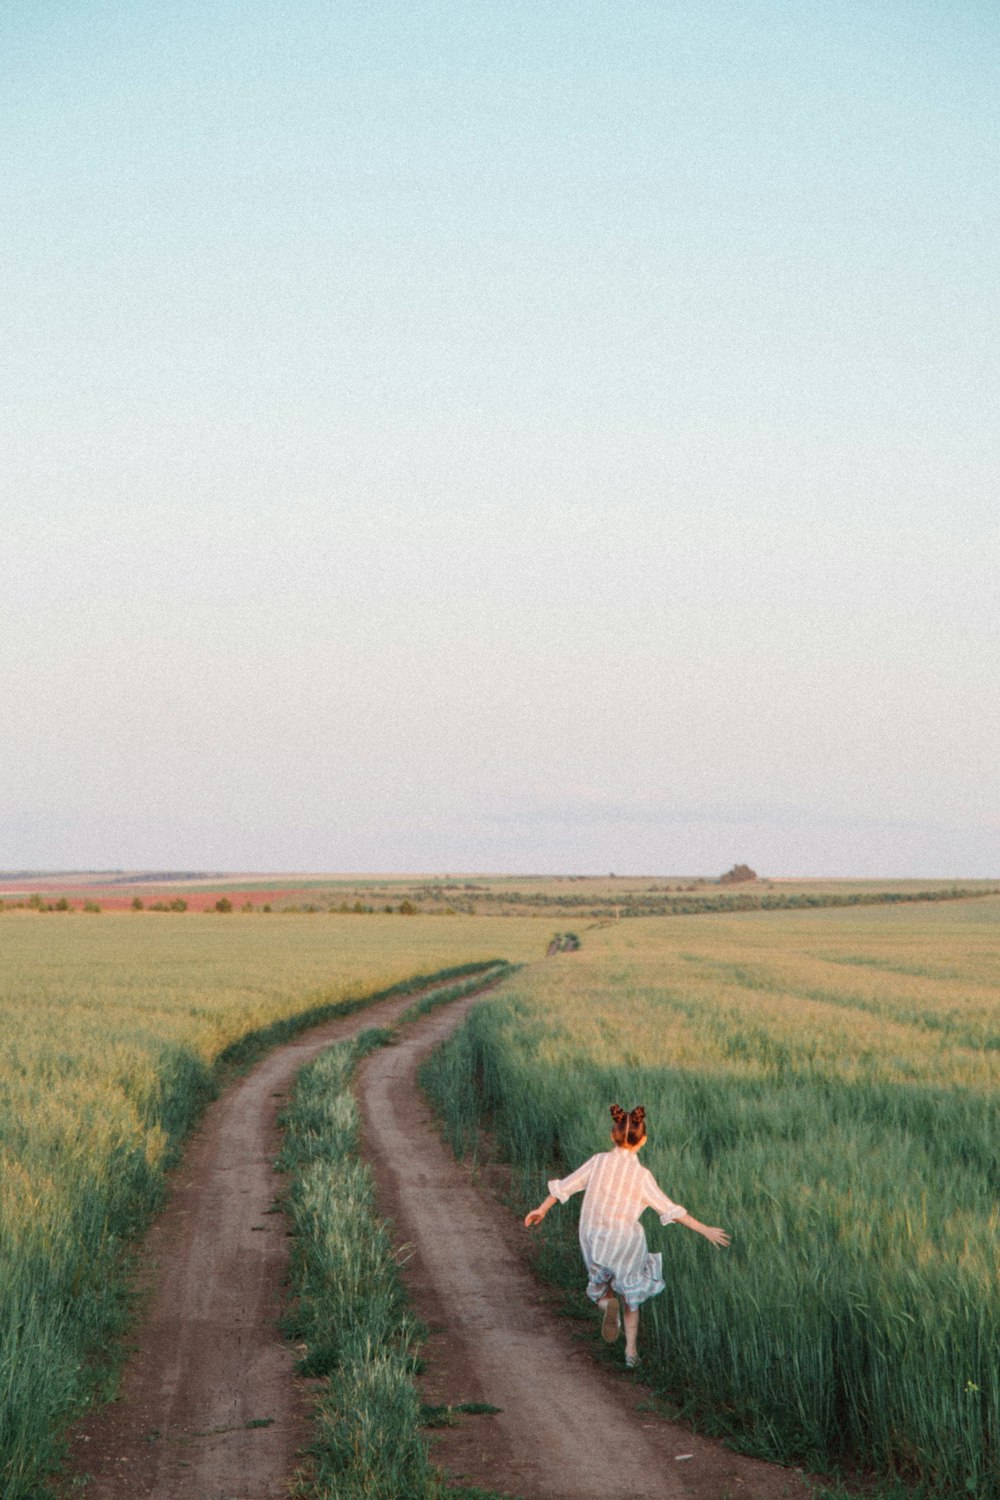 homme en chemise blanche marchant sur un chemin de terre brun entre un champ d’herbe verte pendant la journée